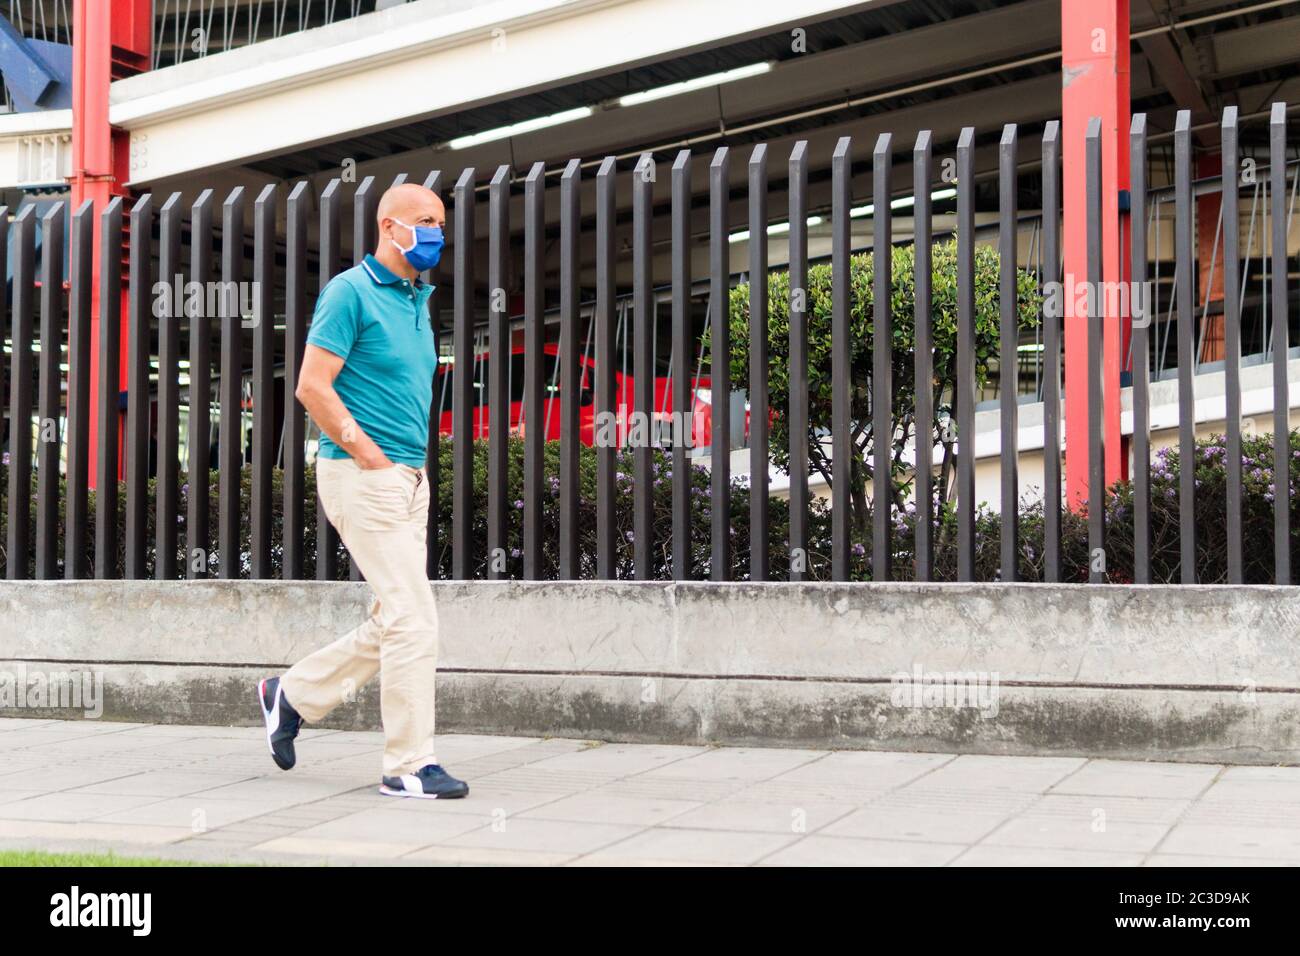 Homme latin d'âge moyen portant un masque pour éviter la propagation du coronavirus ; marchant dans la rue de Bogota. Colombie. Parking à l'arrière. Chemise bleue Banque D'Images